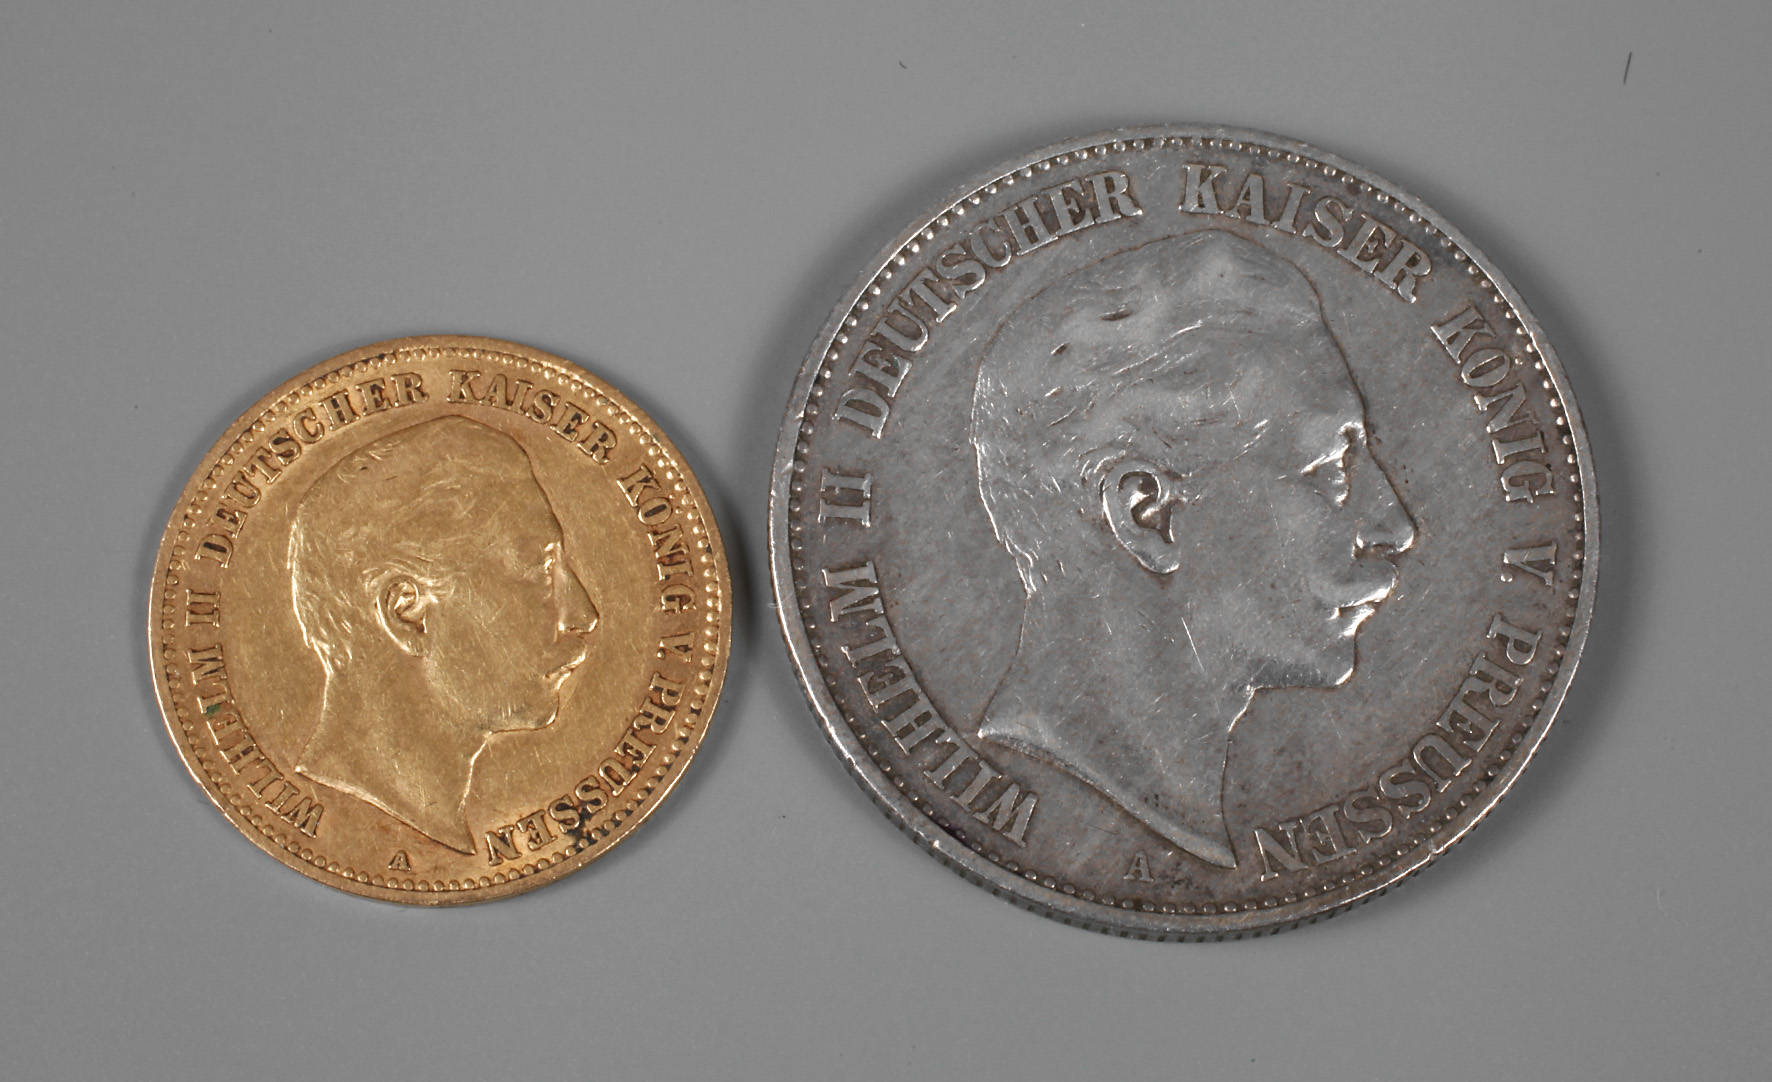 Zwei Münzen Preußen